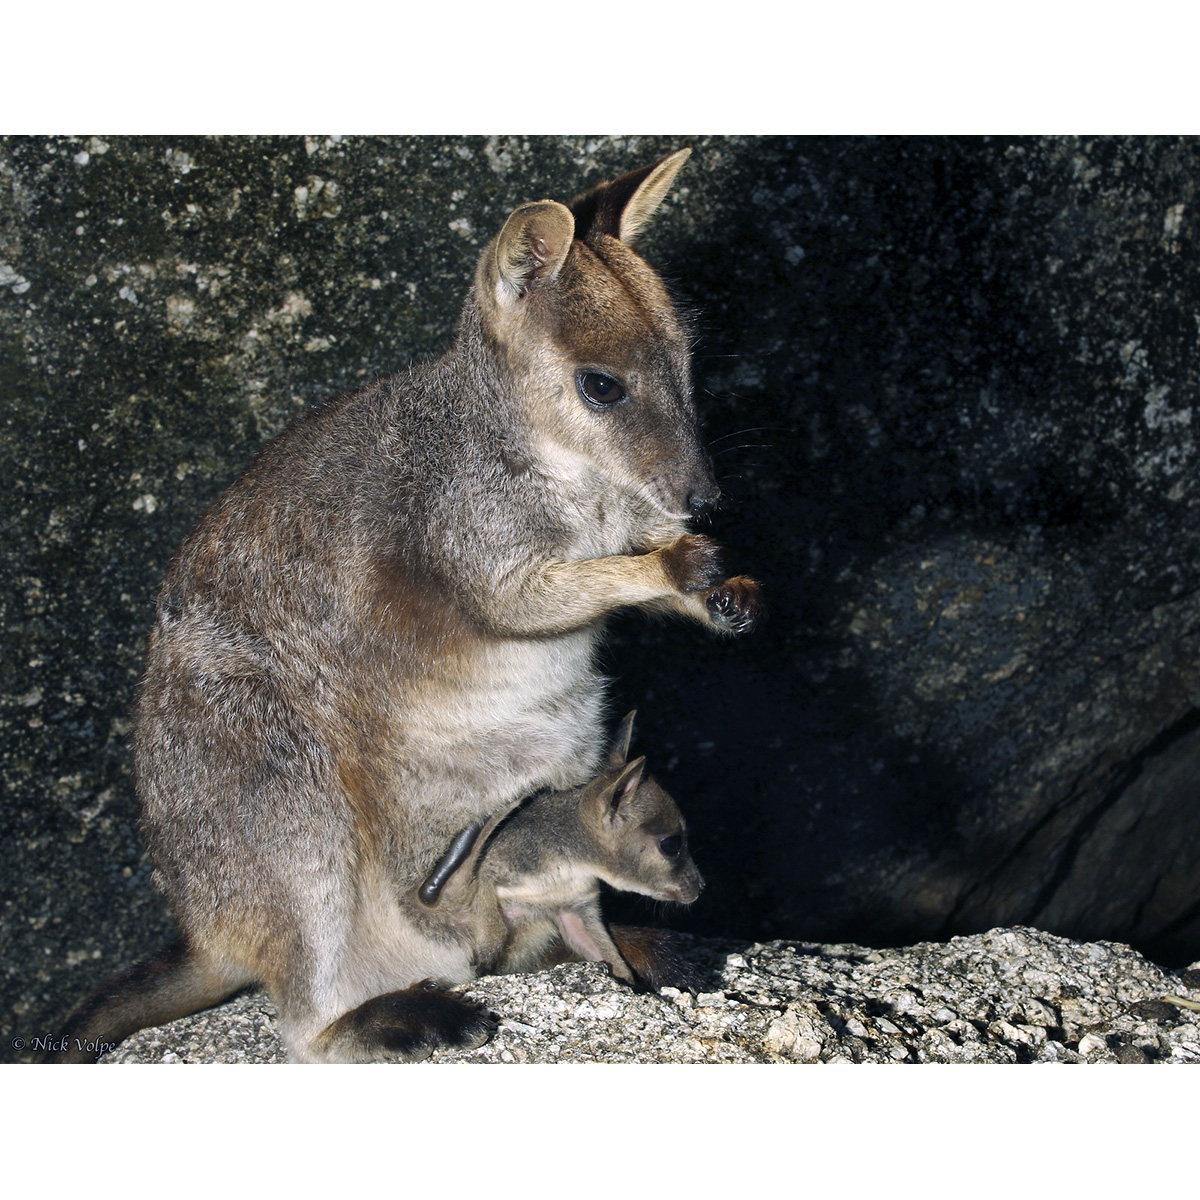 Mareeba Rock Wallaby (Petrogale mareeba) Фото №9